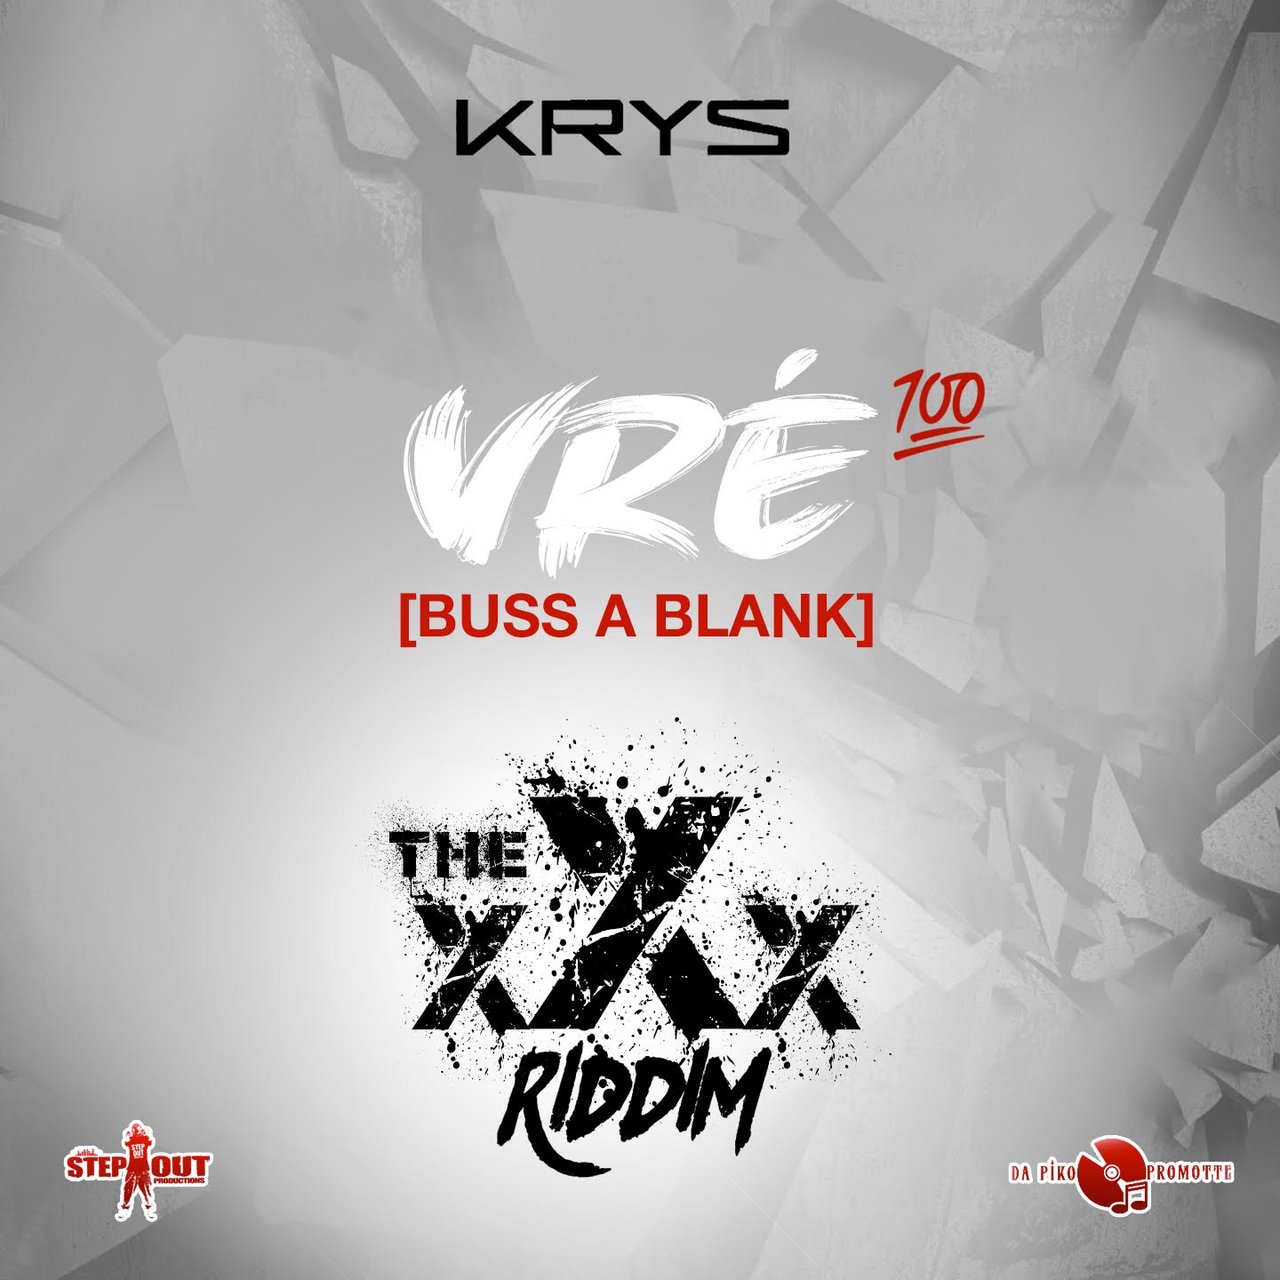 Krys - Vré (Buss A Blank) (Cover)